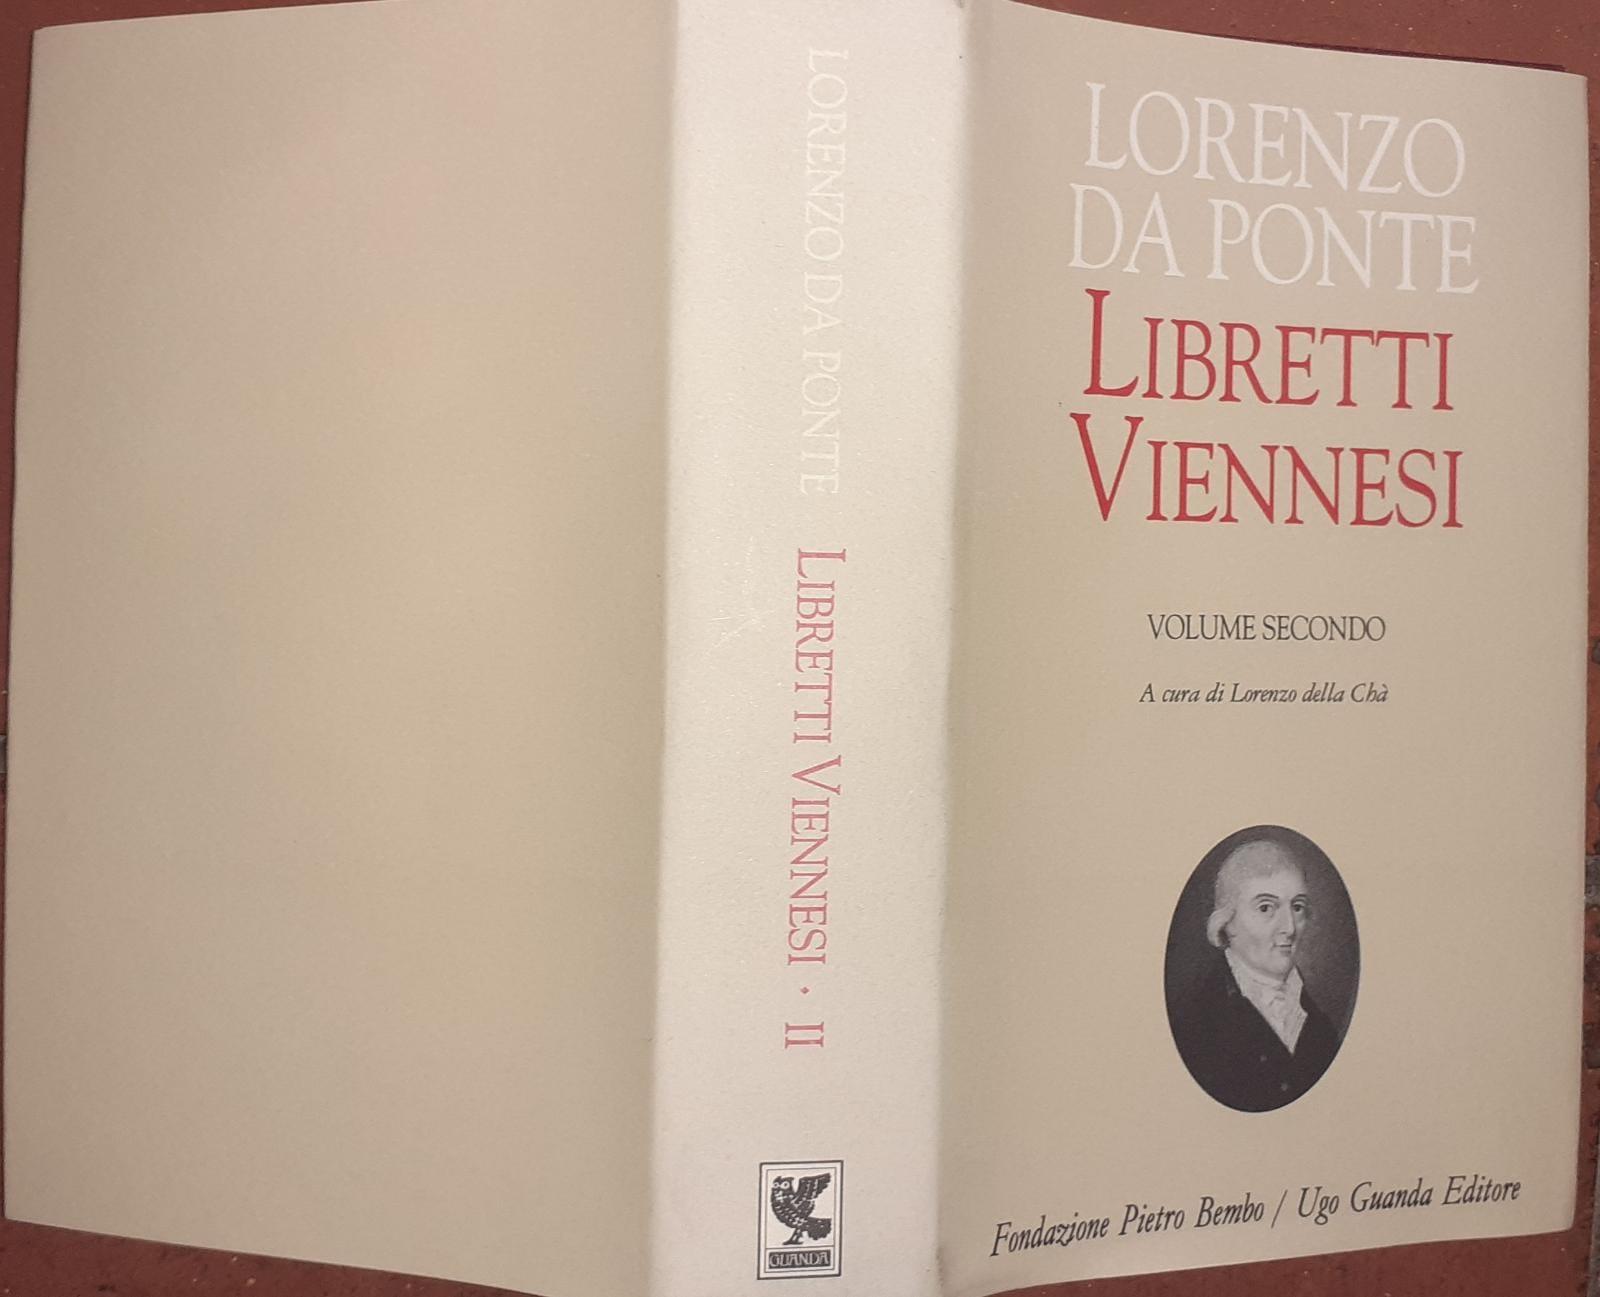 Libretti viennesi - Da Ponte Lorenzo